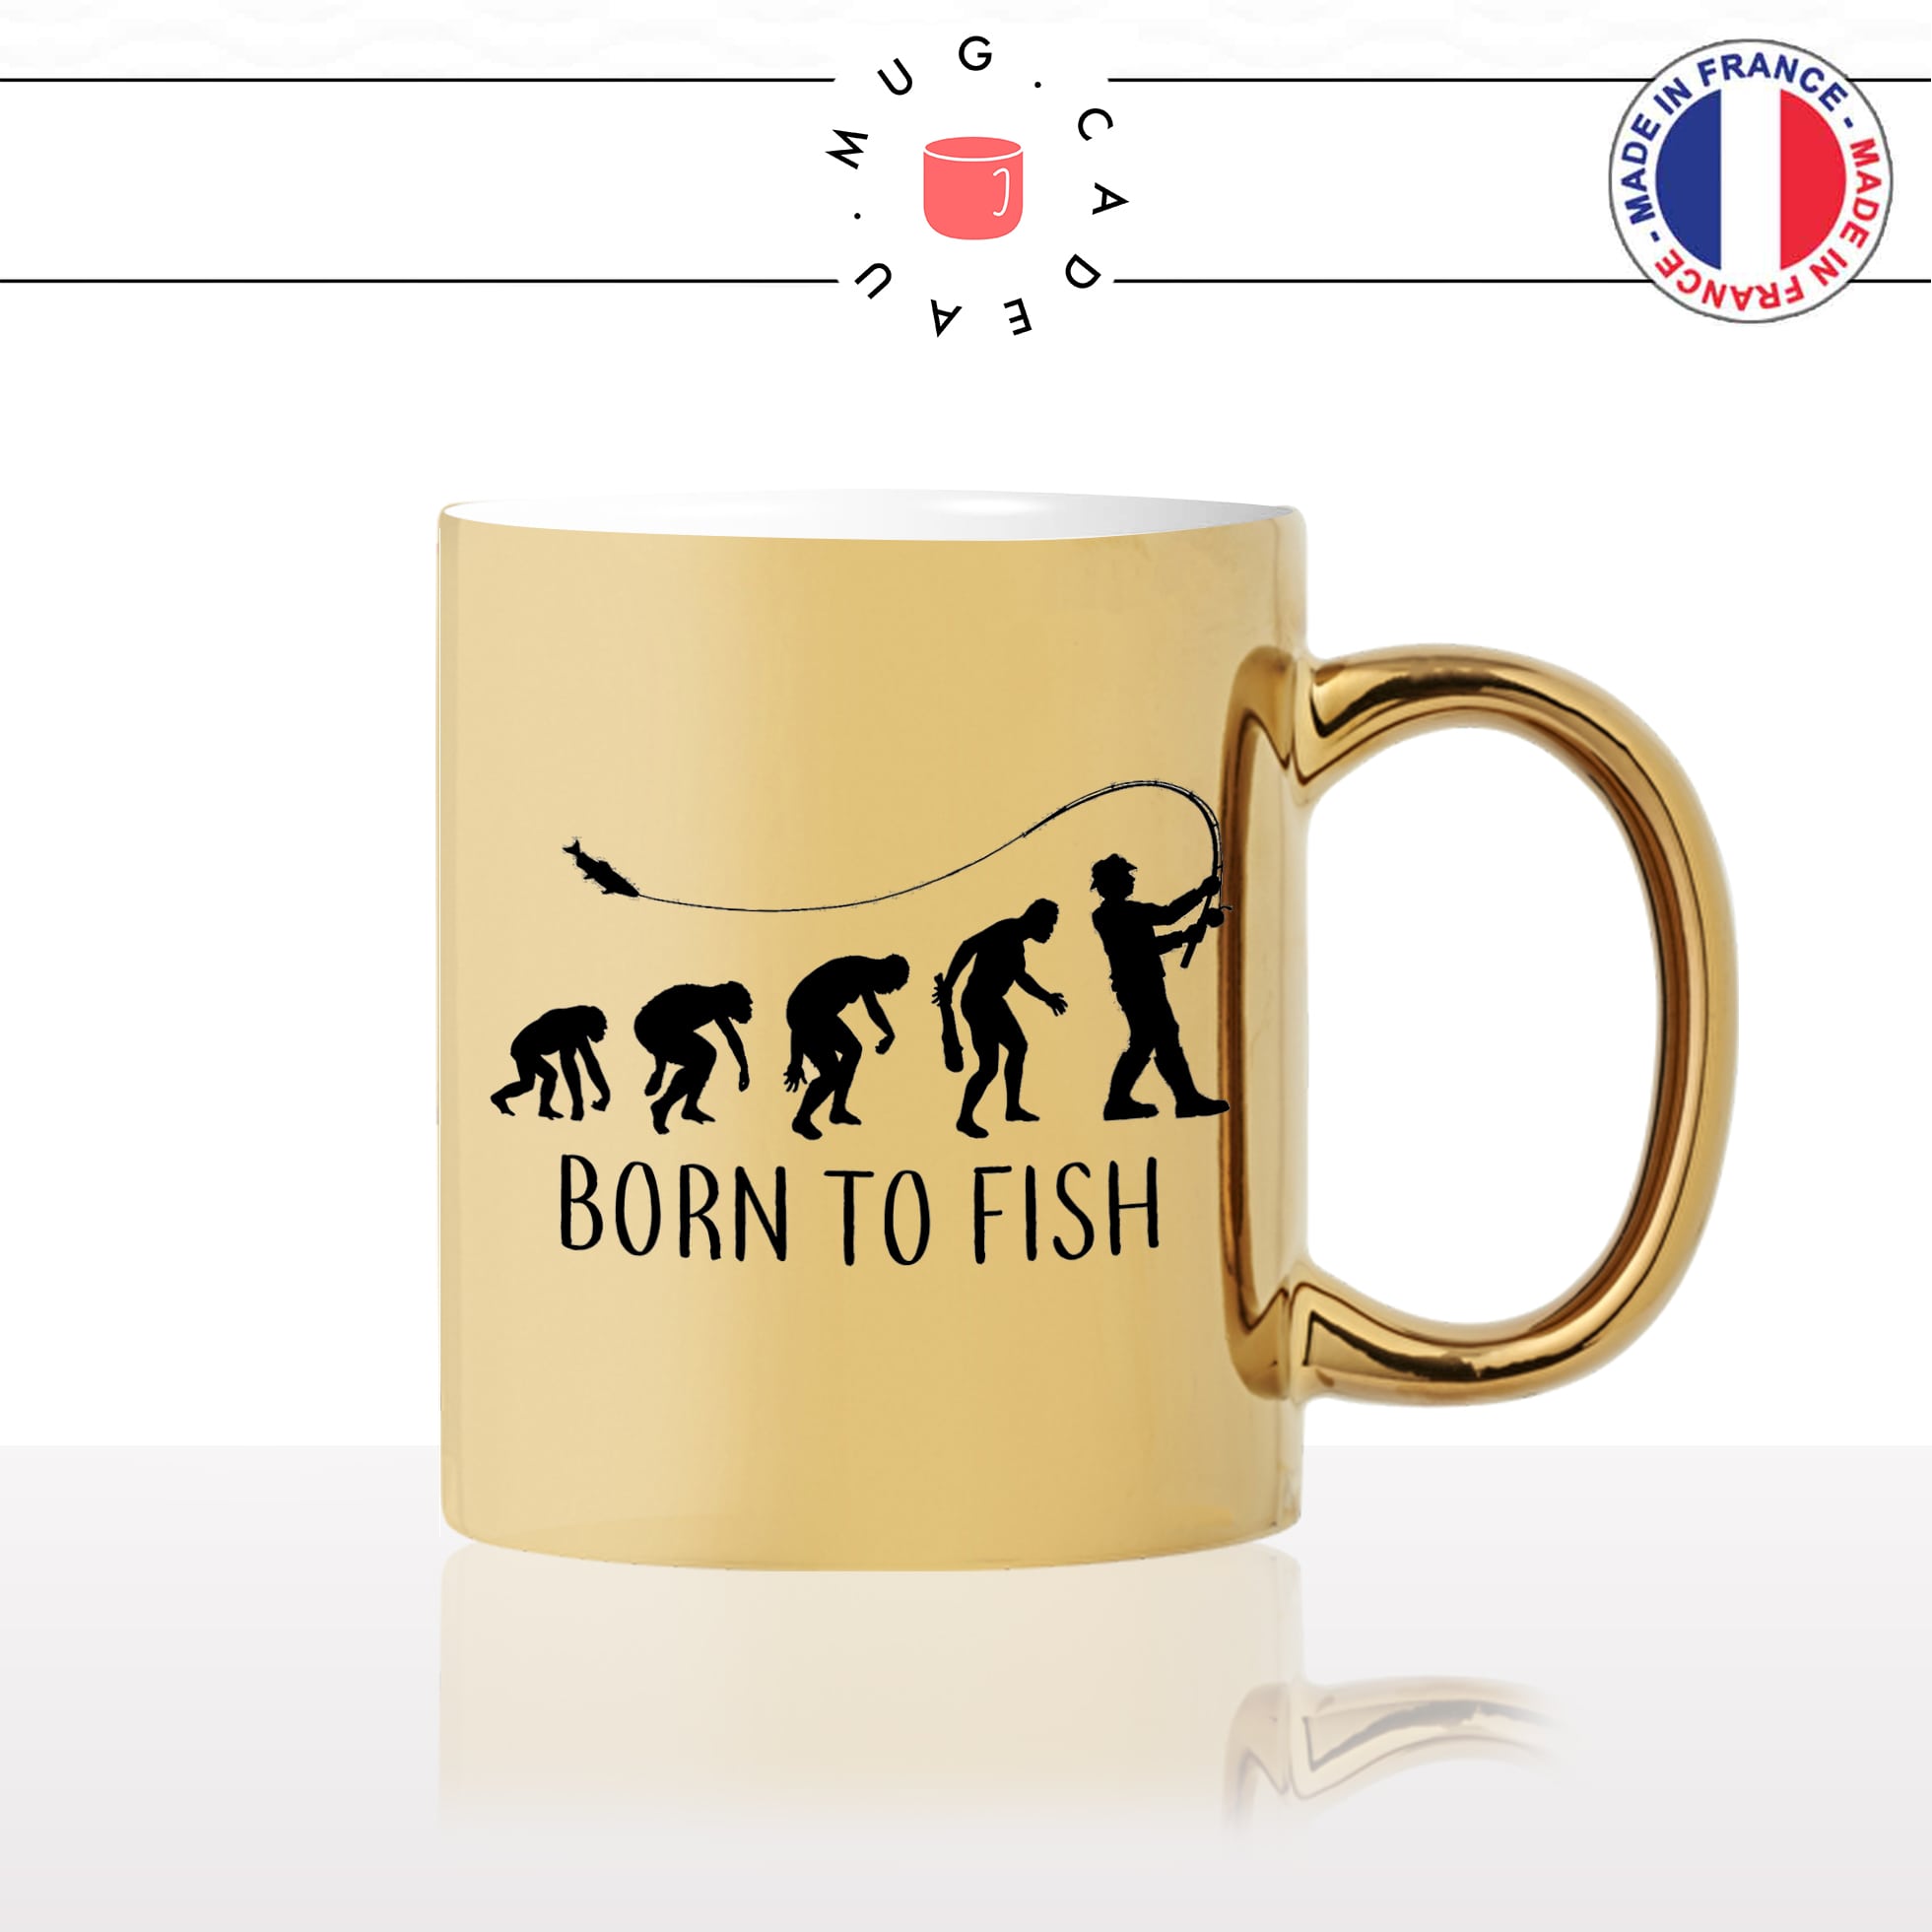 mug-tasse-or-doré-gold-born-to-fish-peche-pecher-canne-pecheur-sport-evolution-humaine-homme-cool-idée-cadeau-fun-café-thé-personnalisé2-min